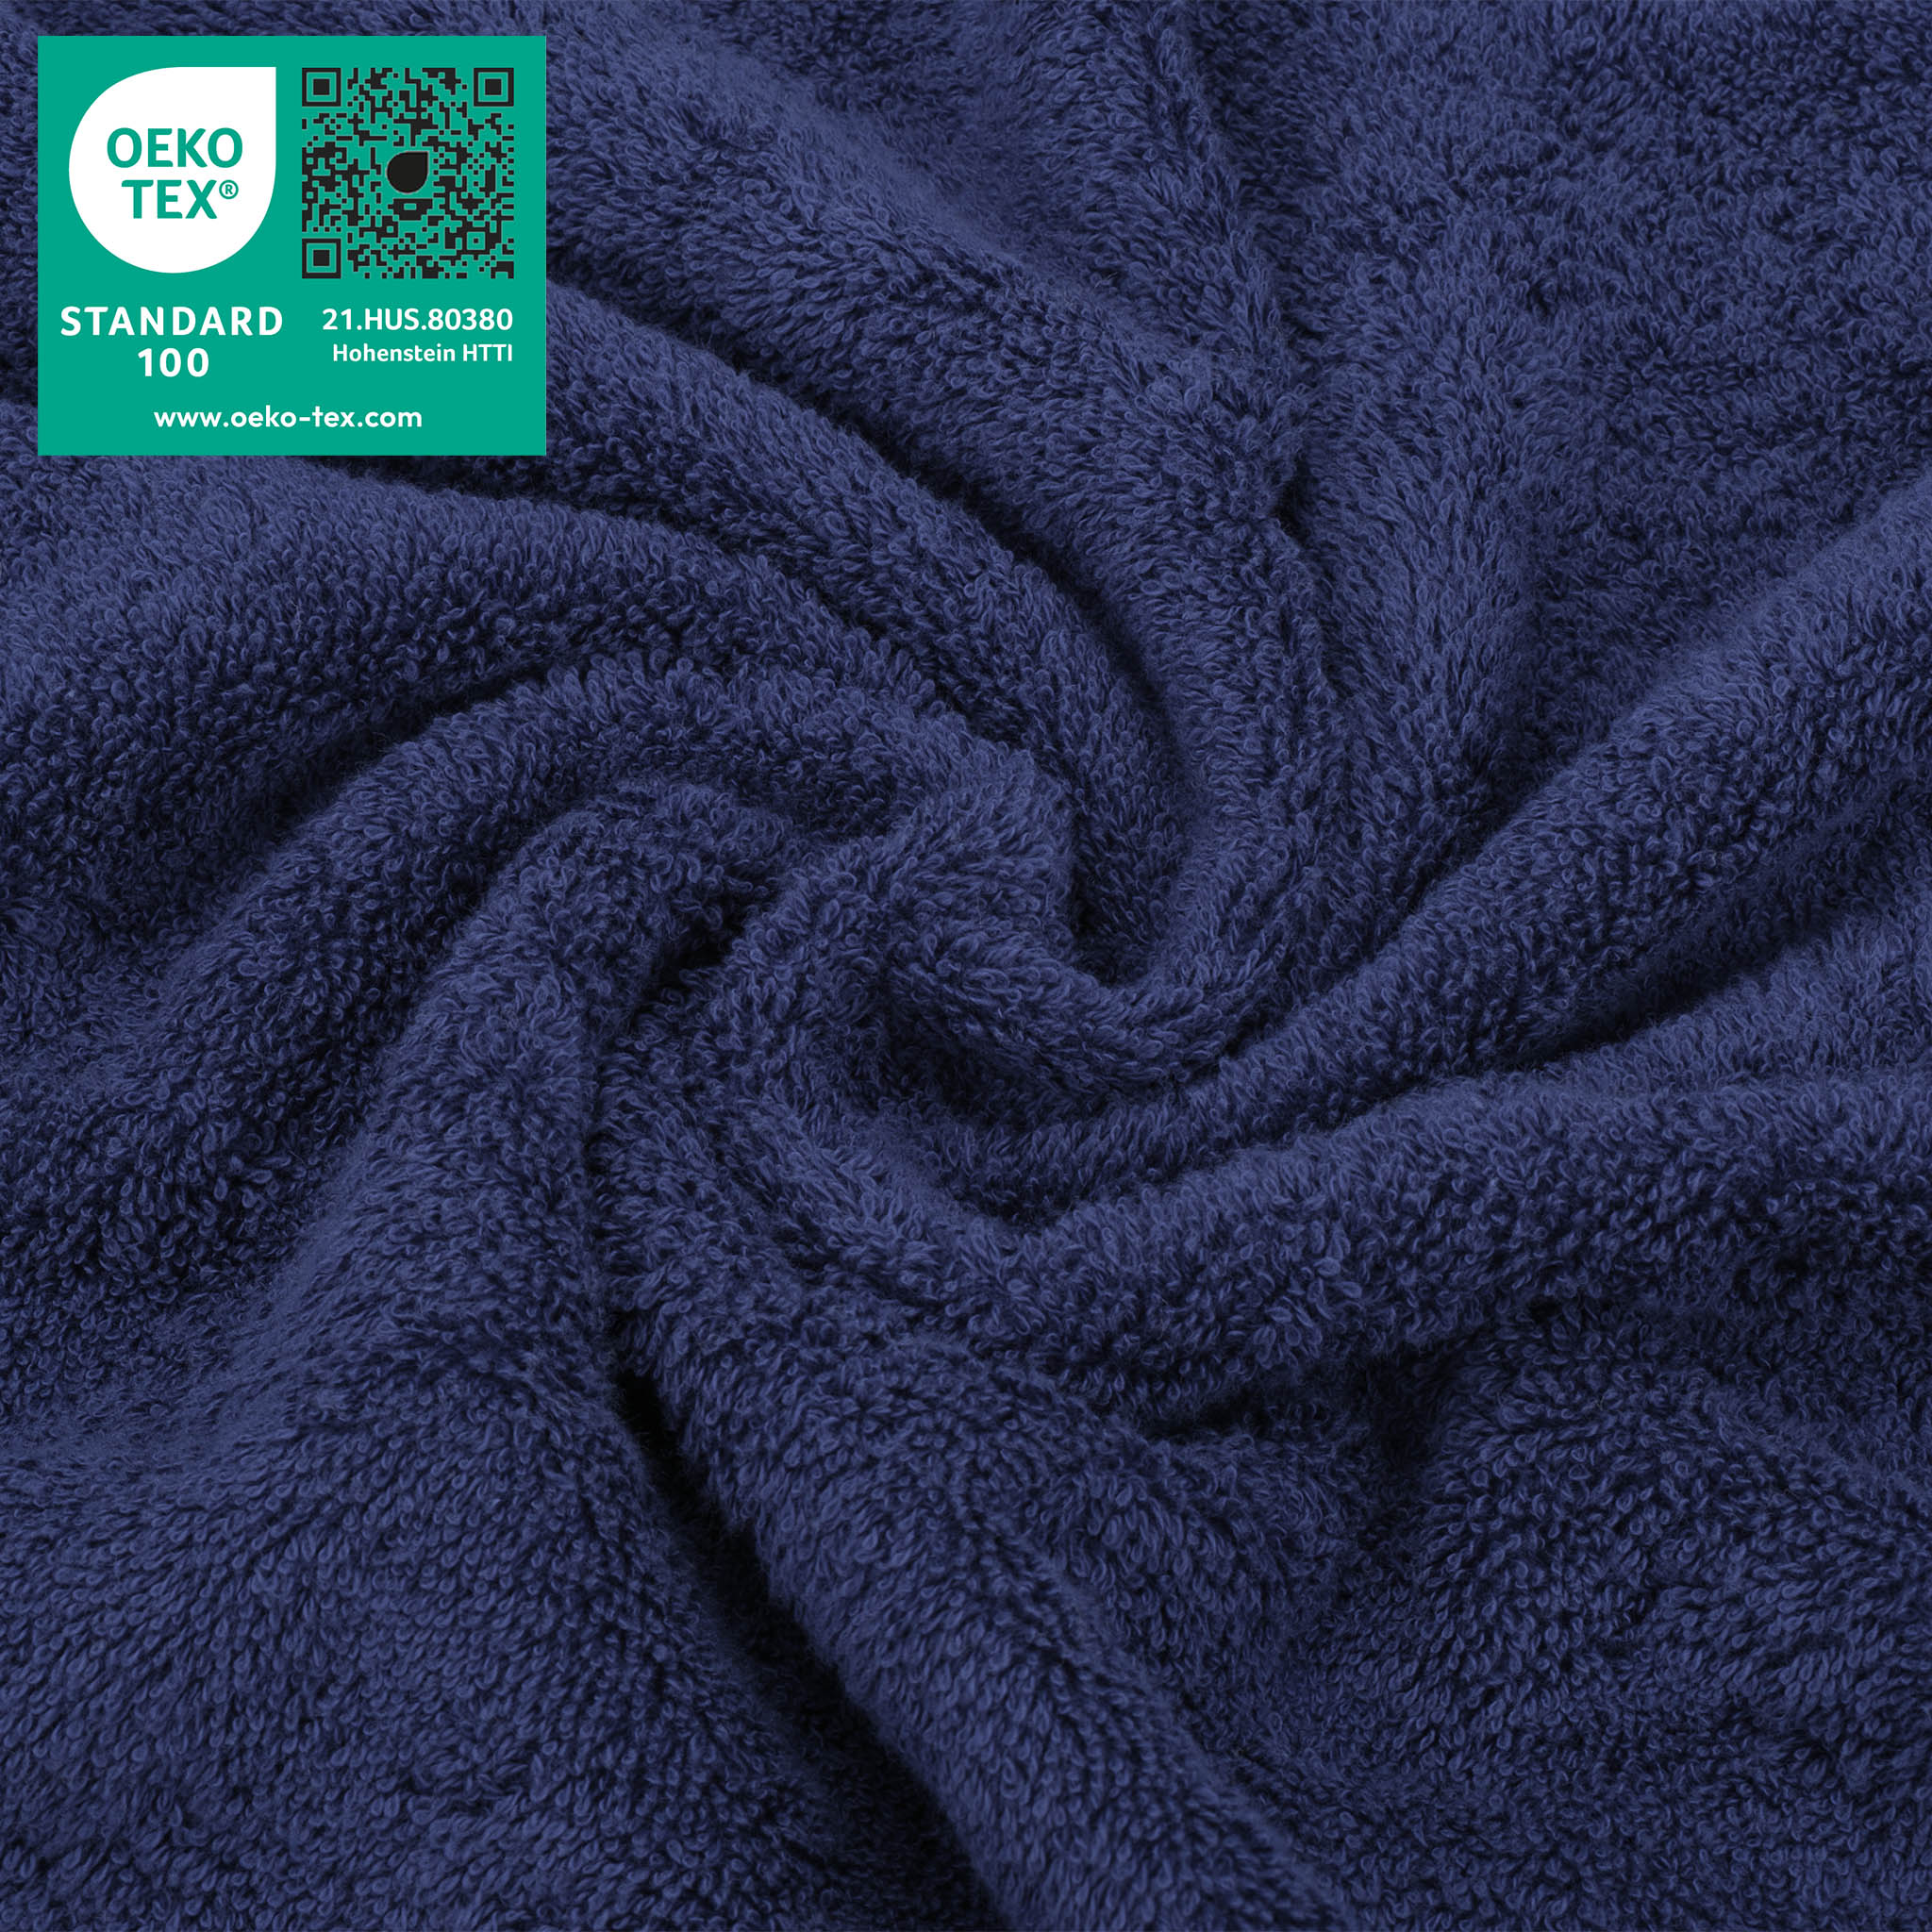 American Soft Linen 100% Turkish Cotton 4 Piece Washcloth Set navy-blue-3